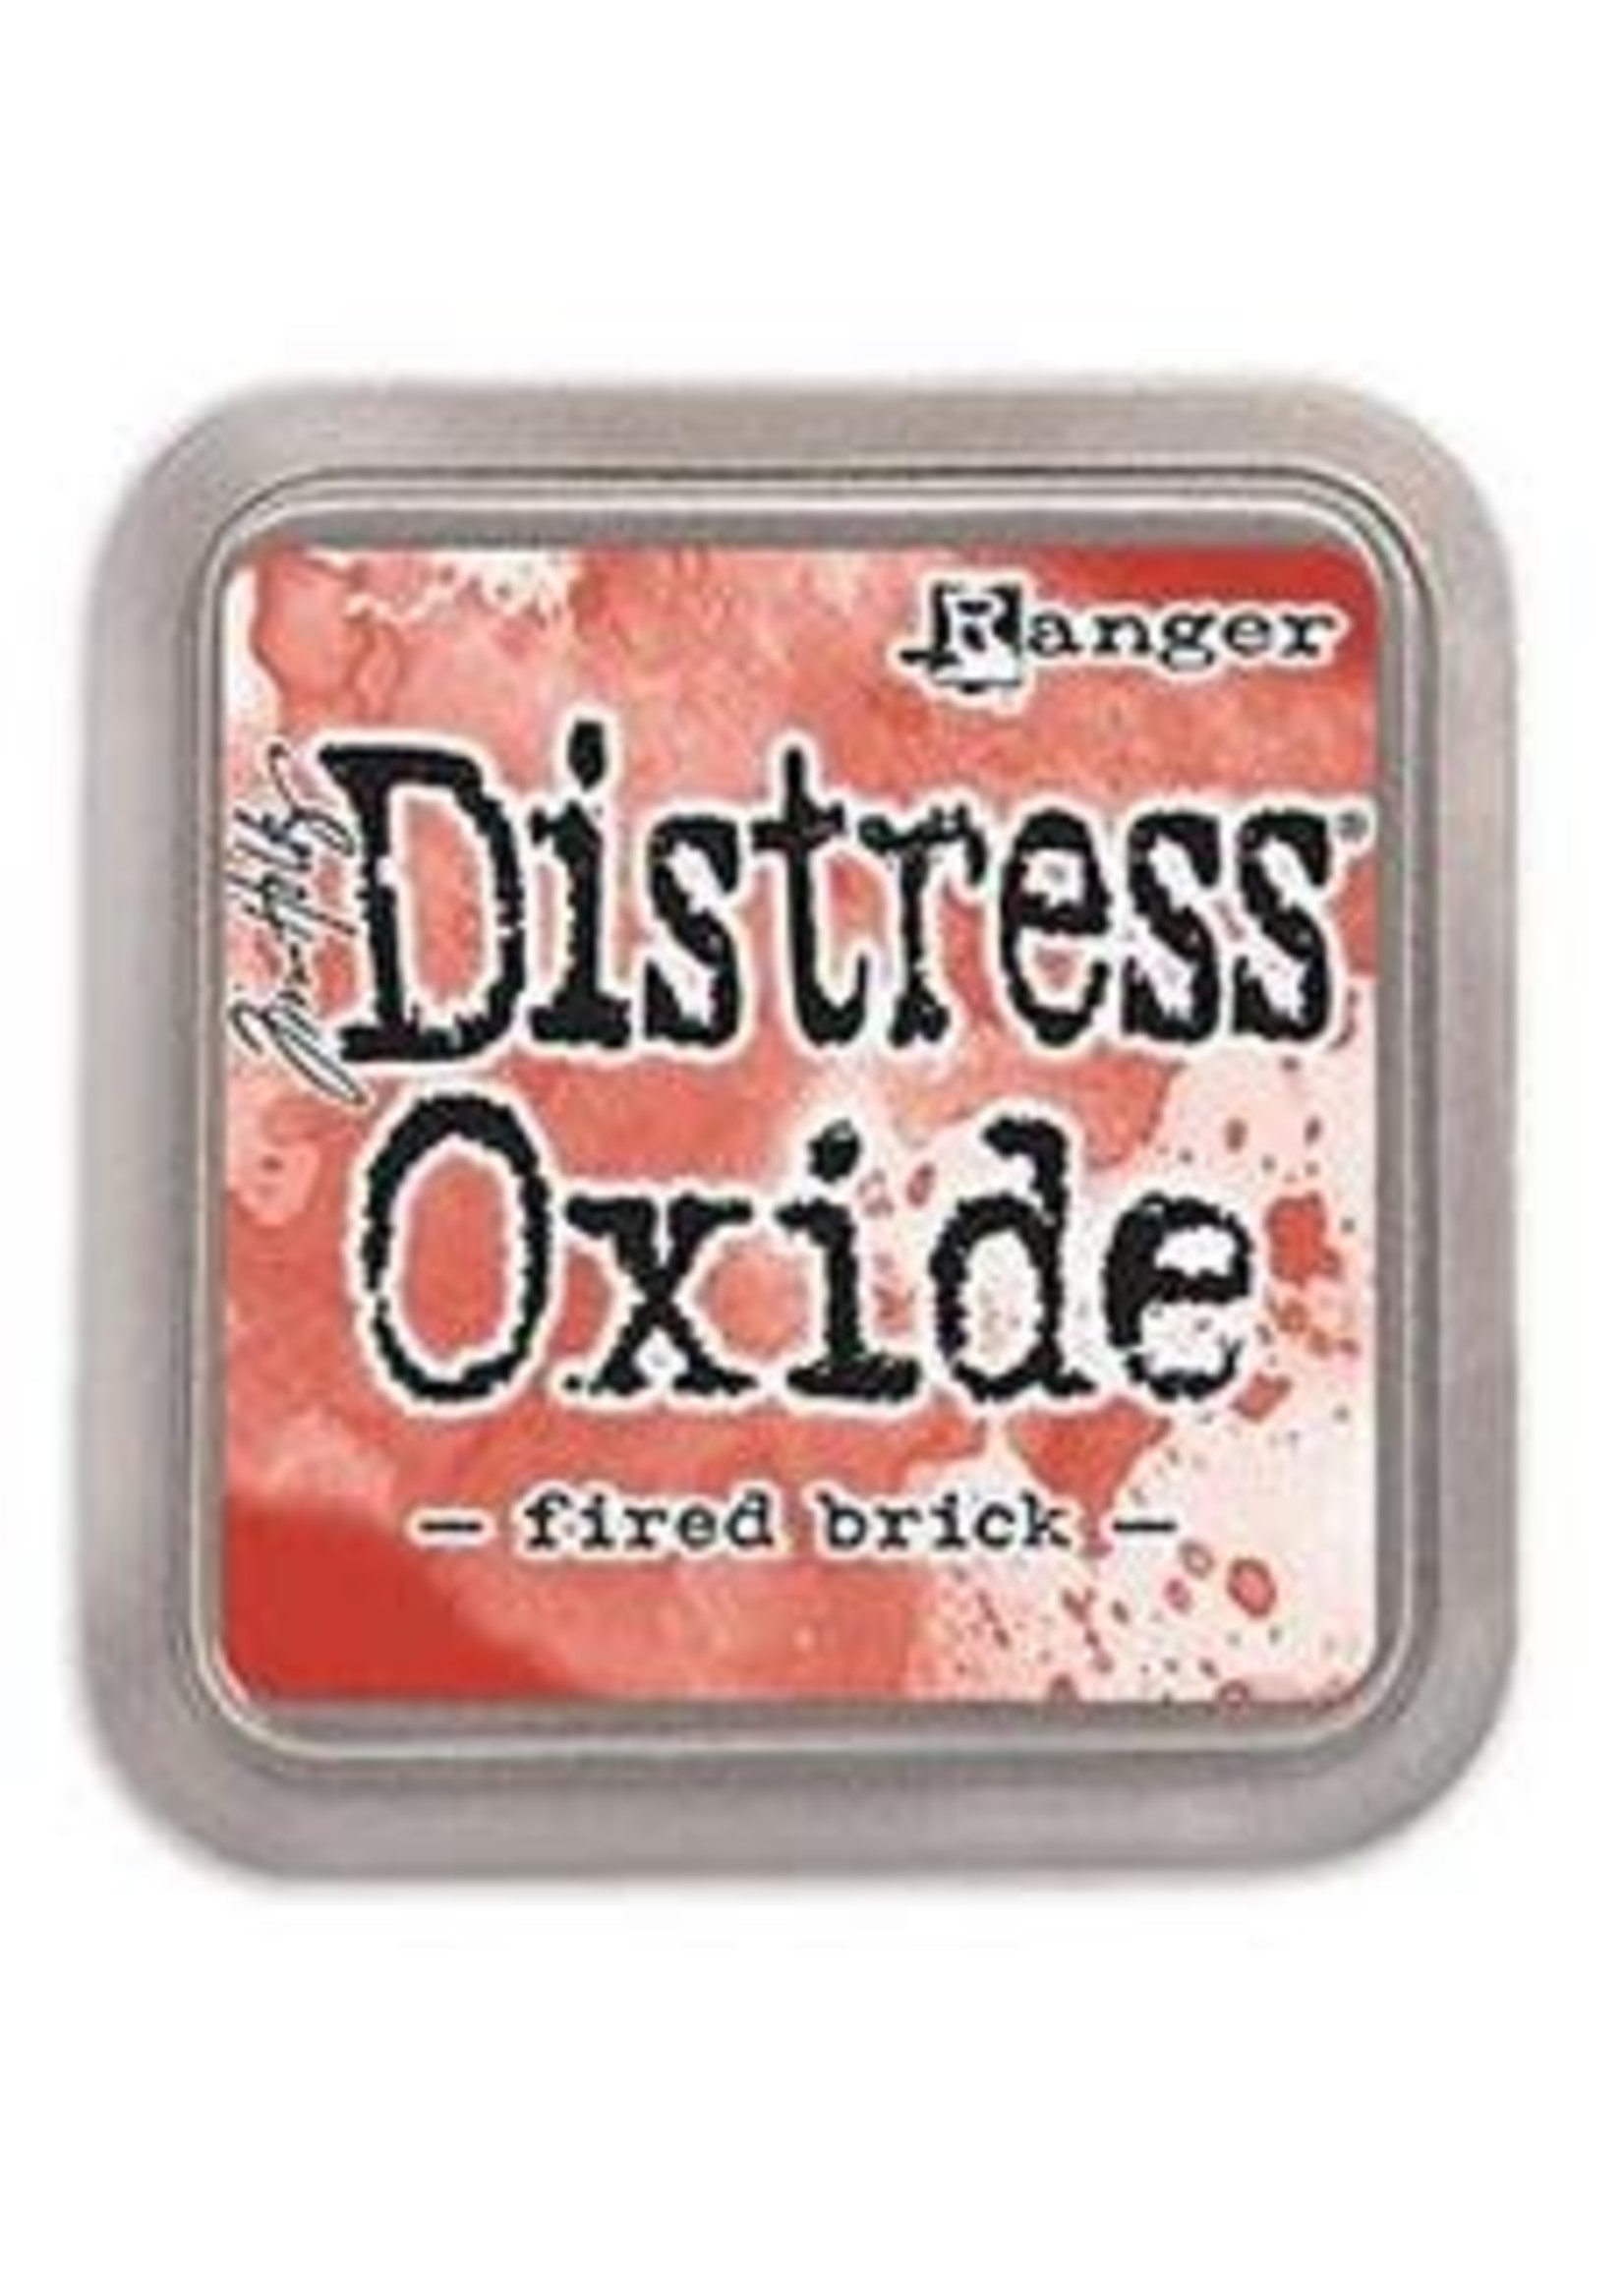 RANGER Distress Oxide Fired Brick